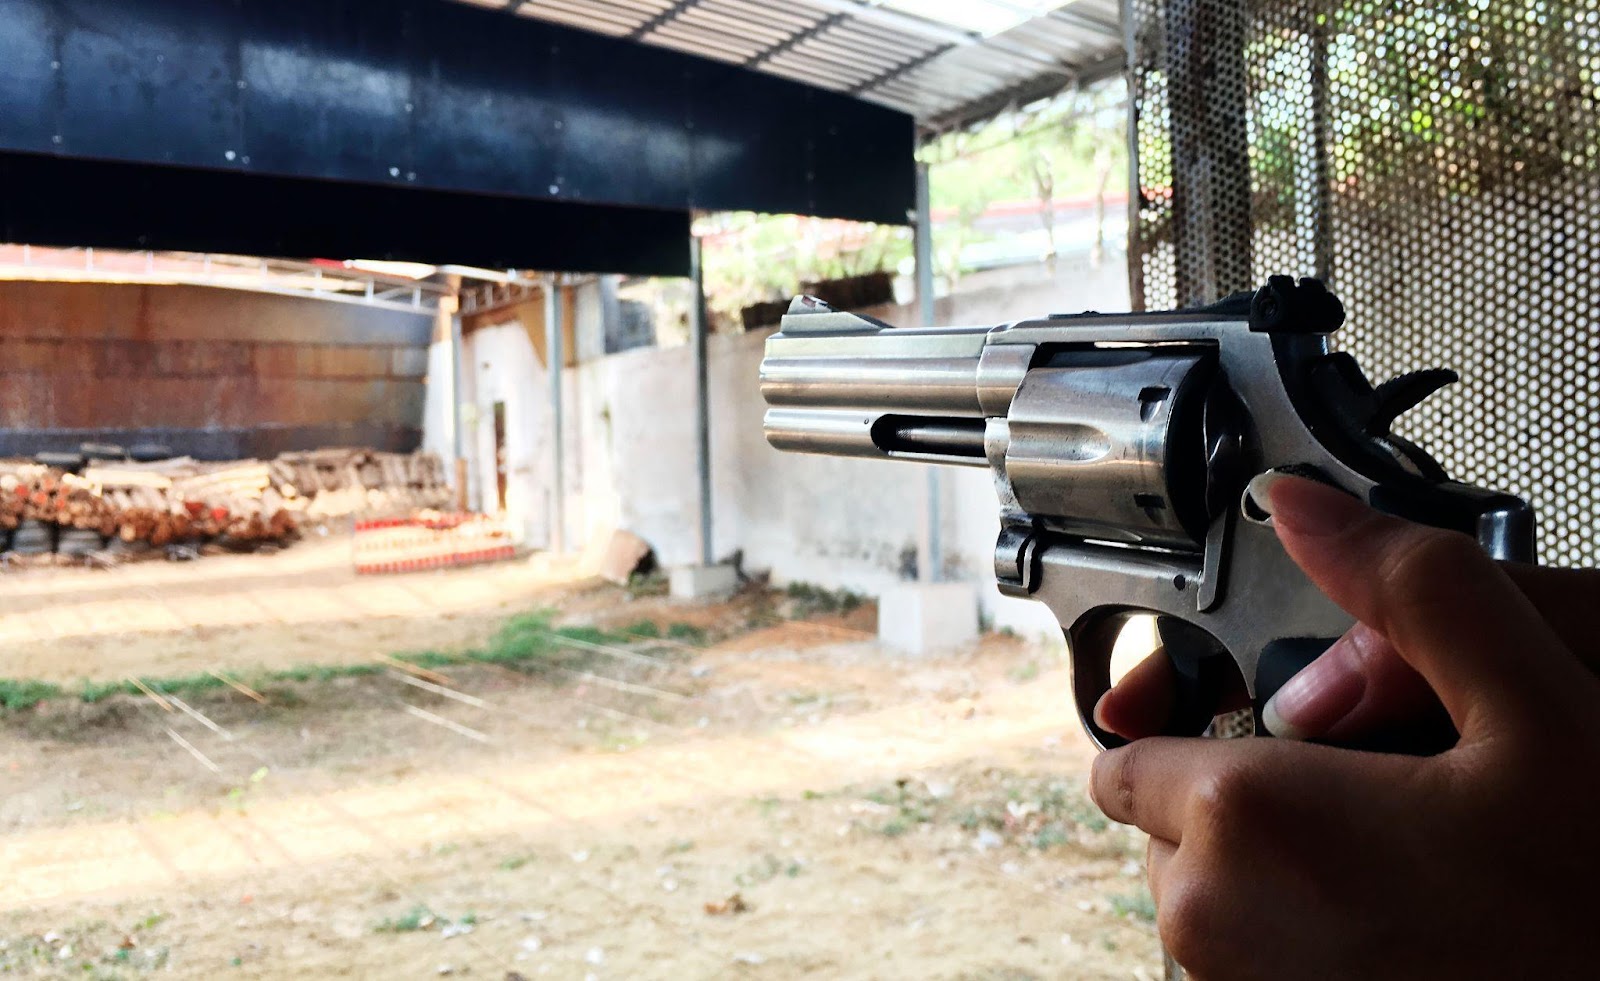 ženské ruce držící revolver míří do prostoru střelnice